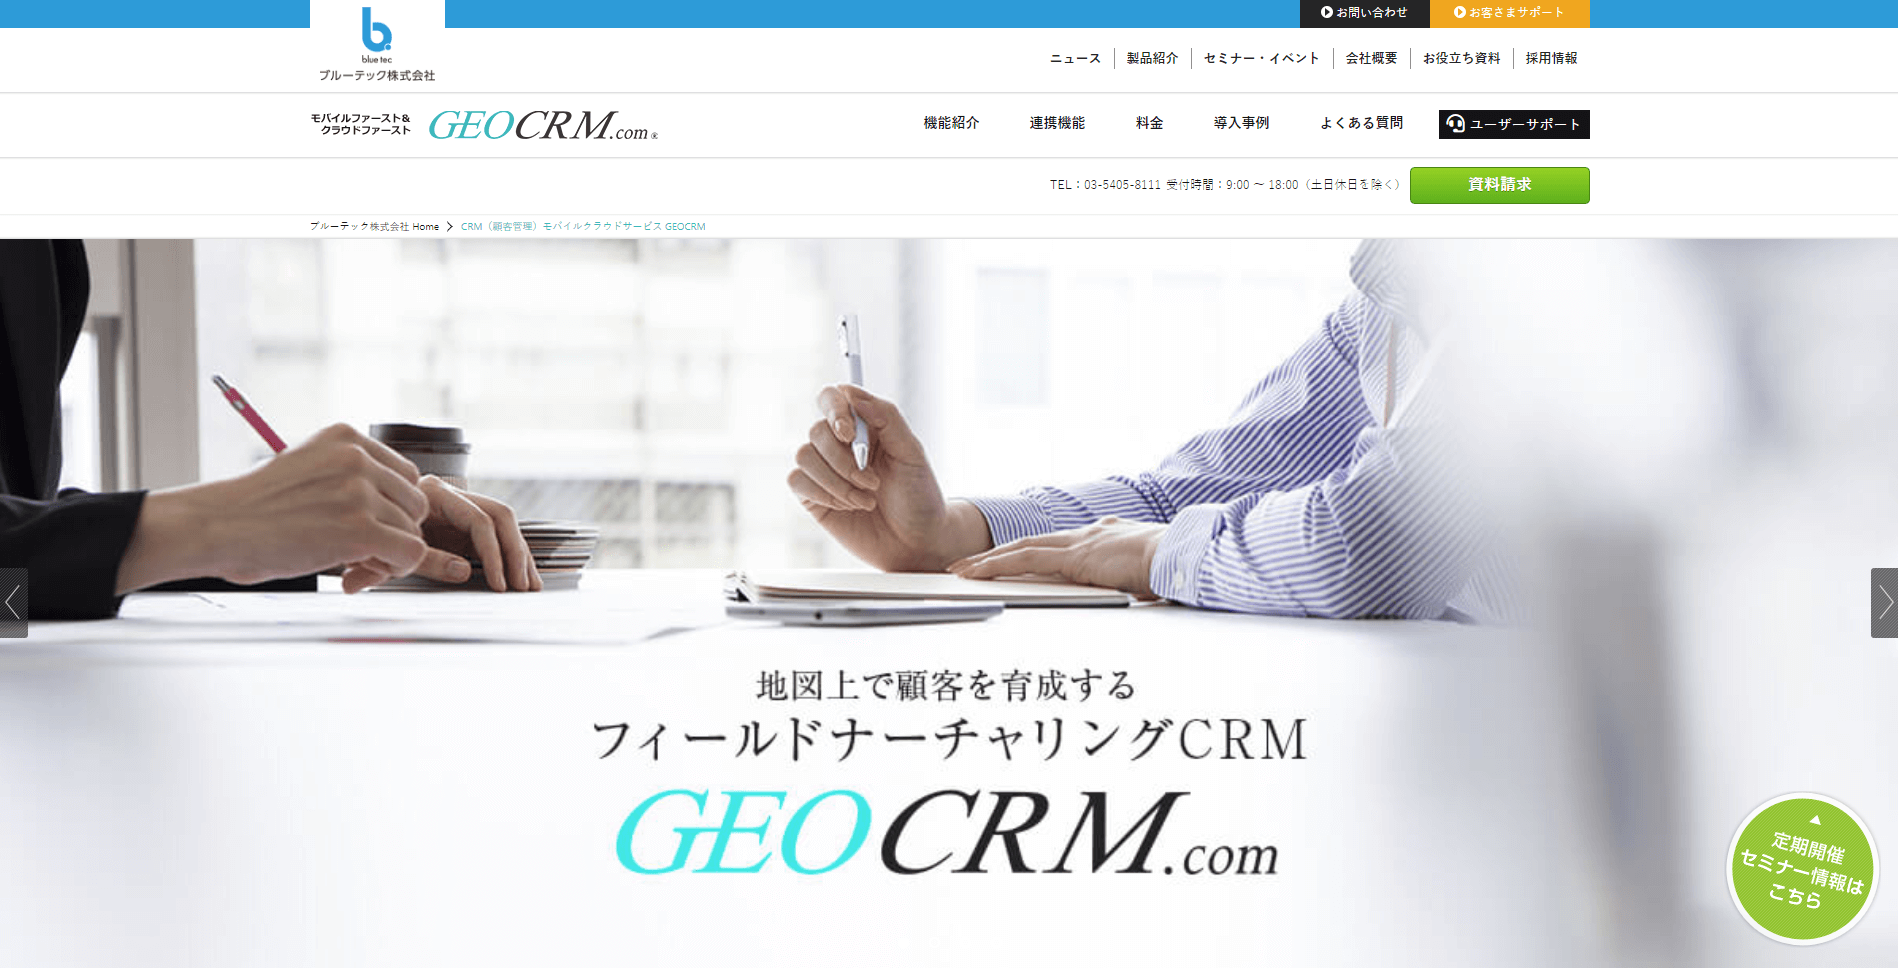 Geo CRM